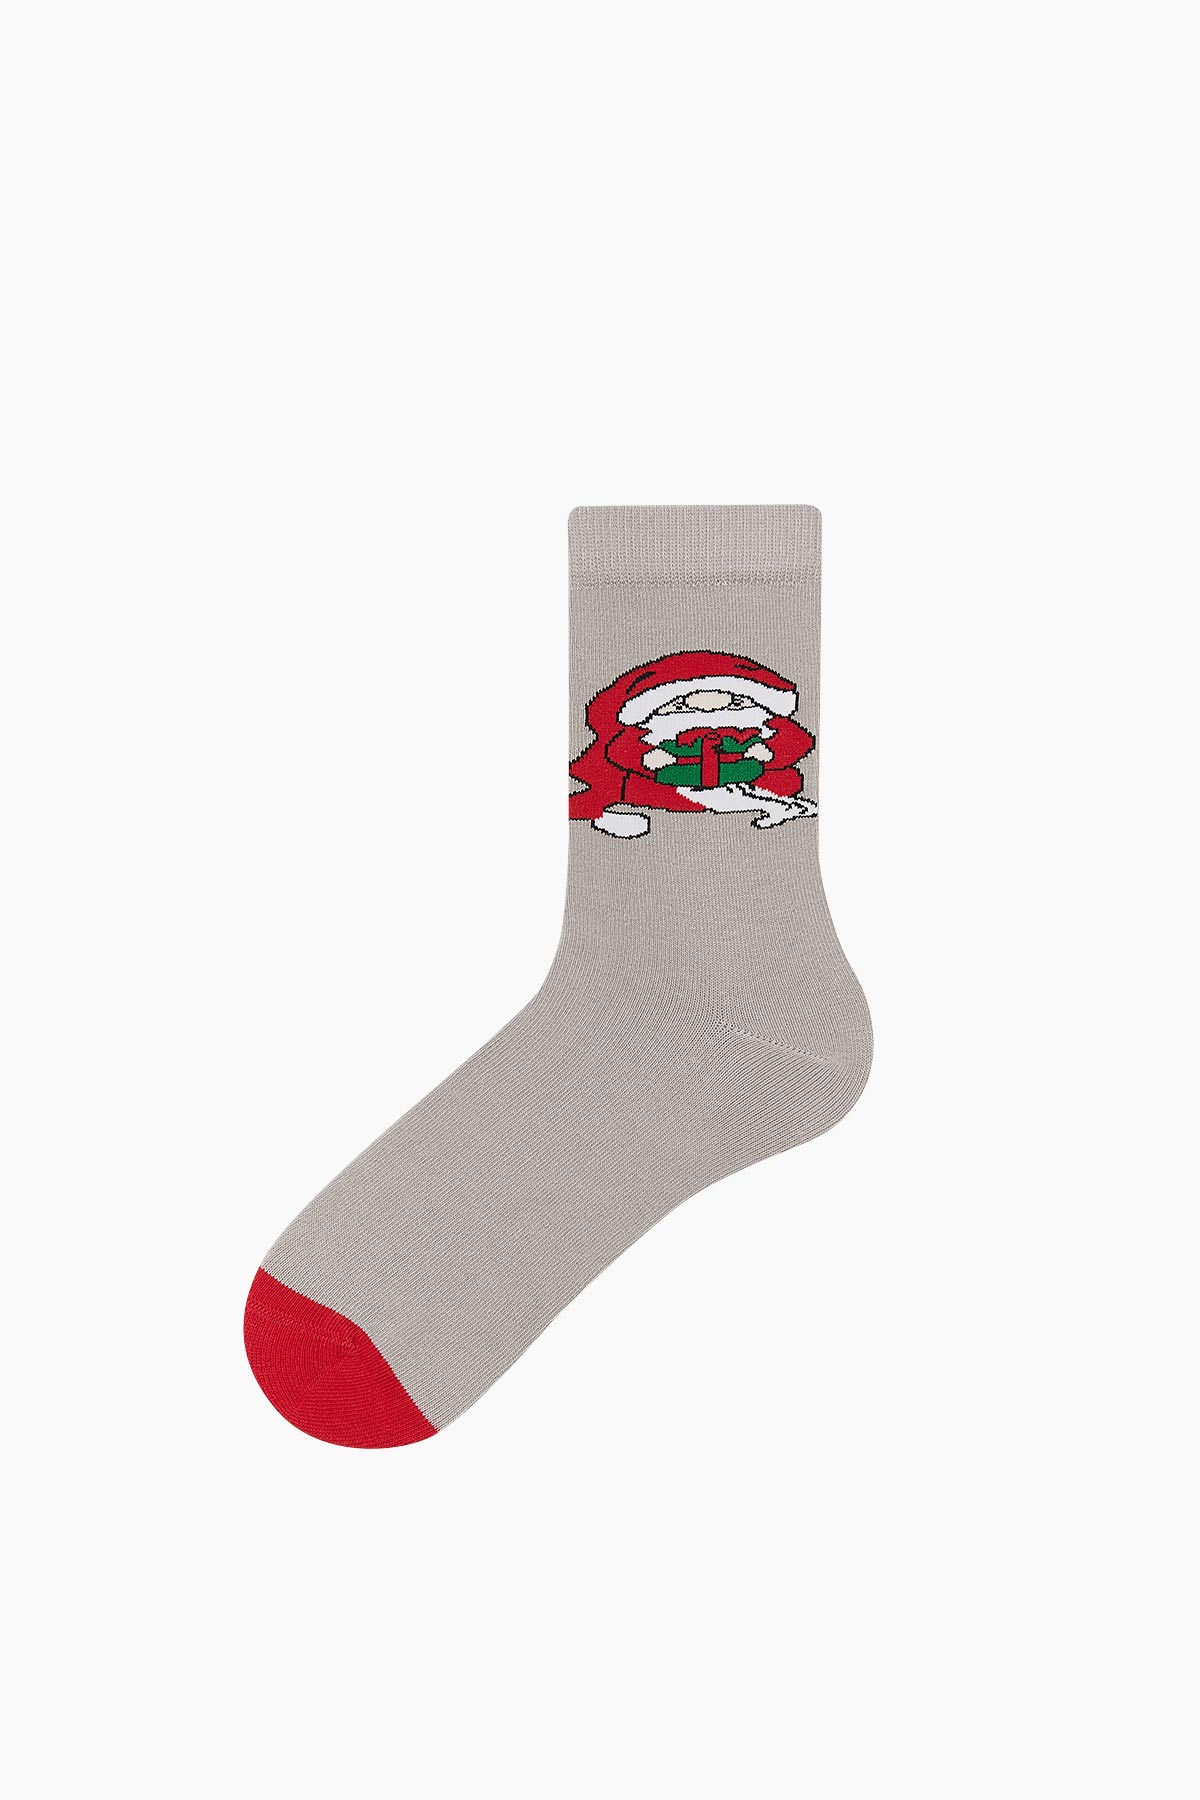 Bross Jingle Bells Printed Christmas Socks